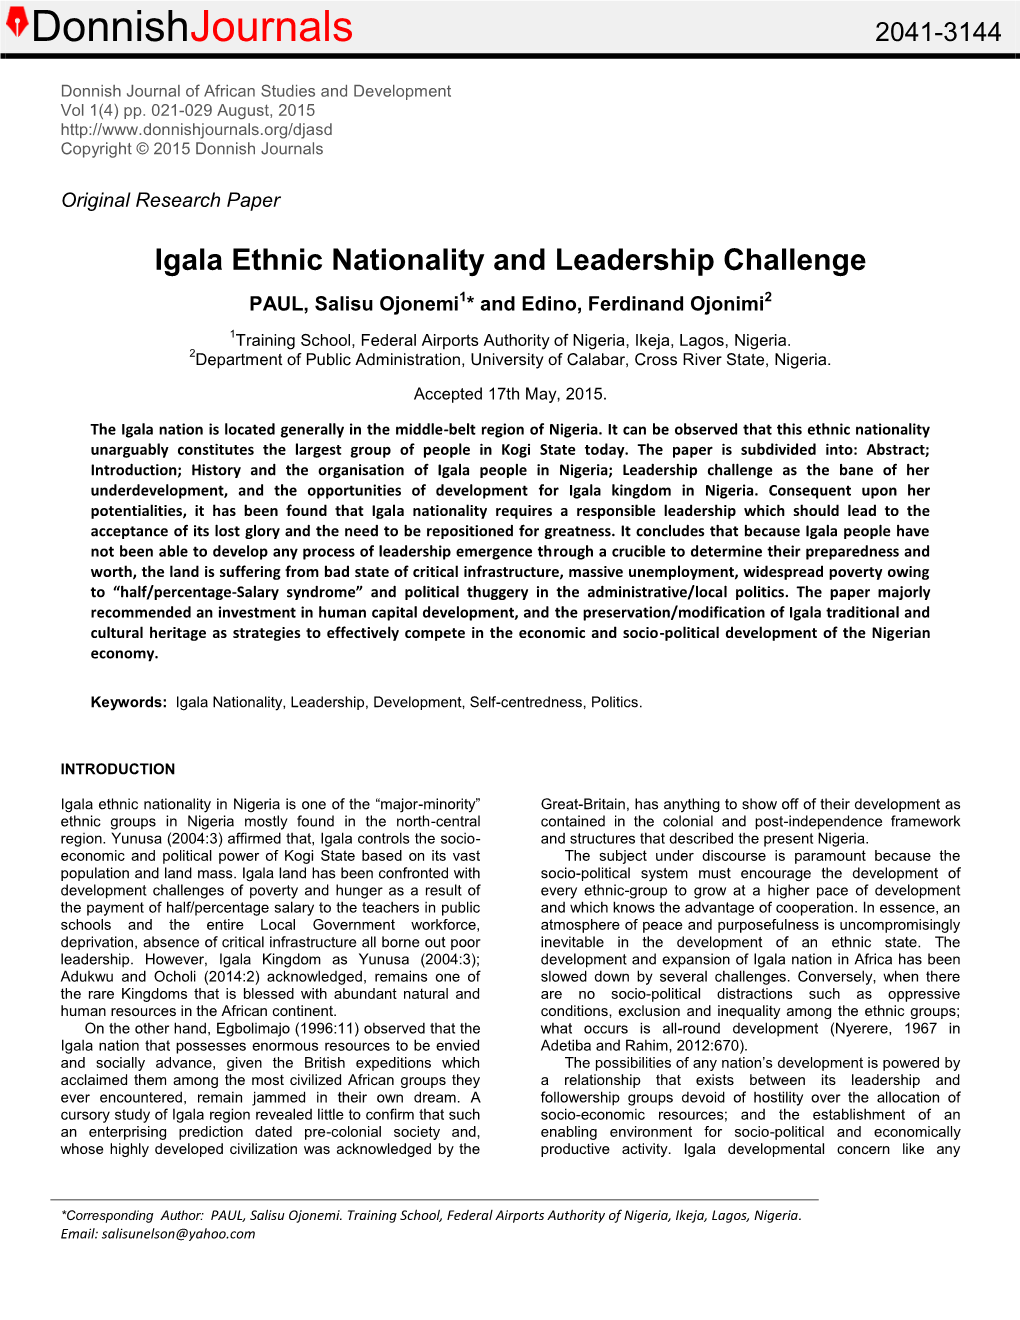 Igala Ethnic Nationality and Leadership Challenge